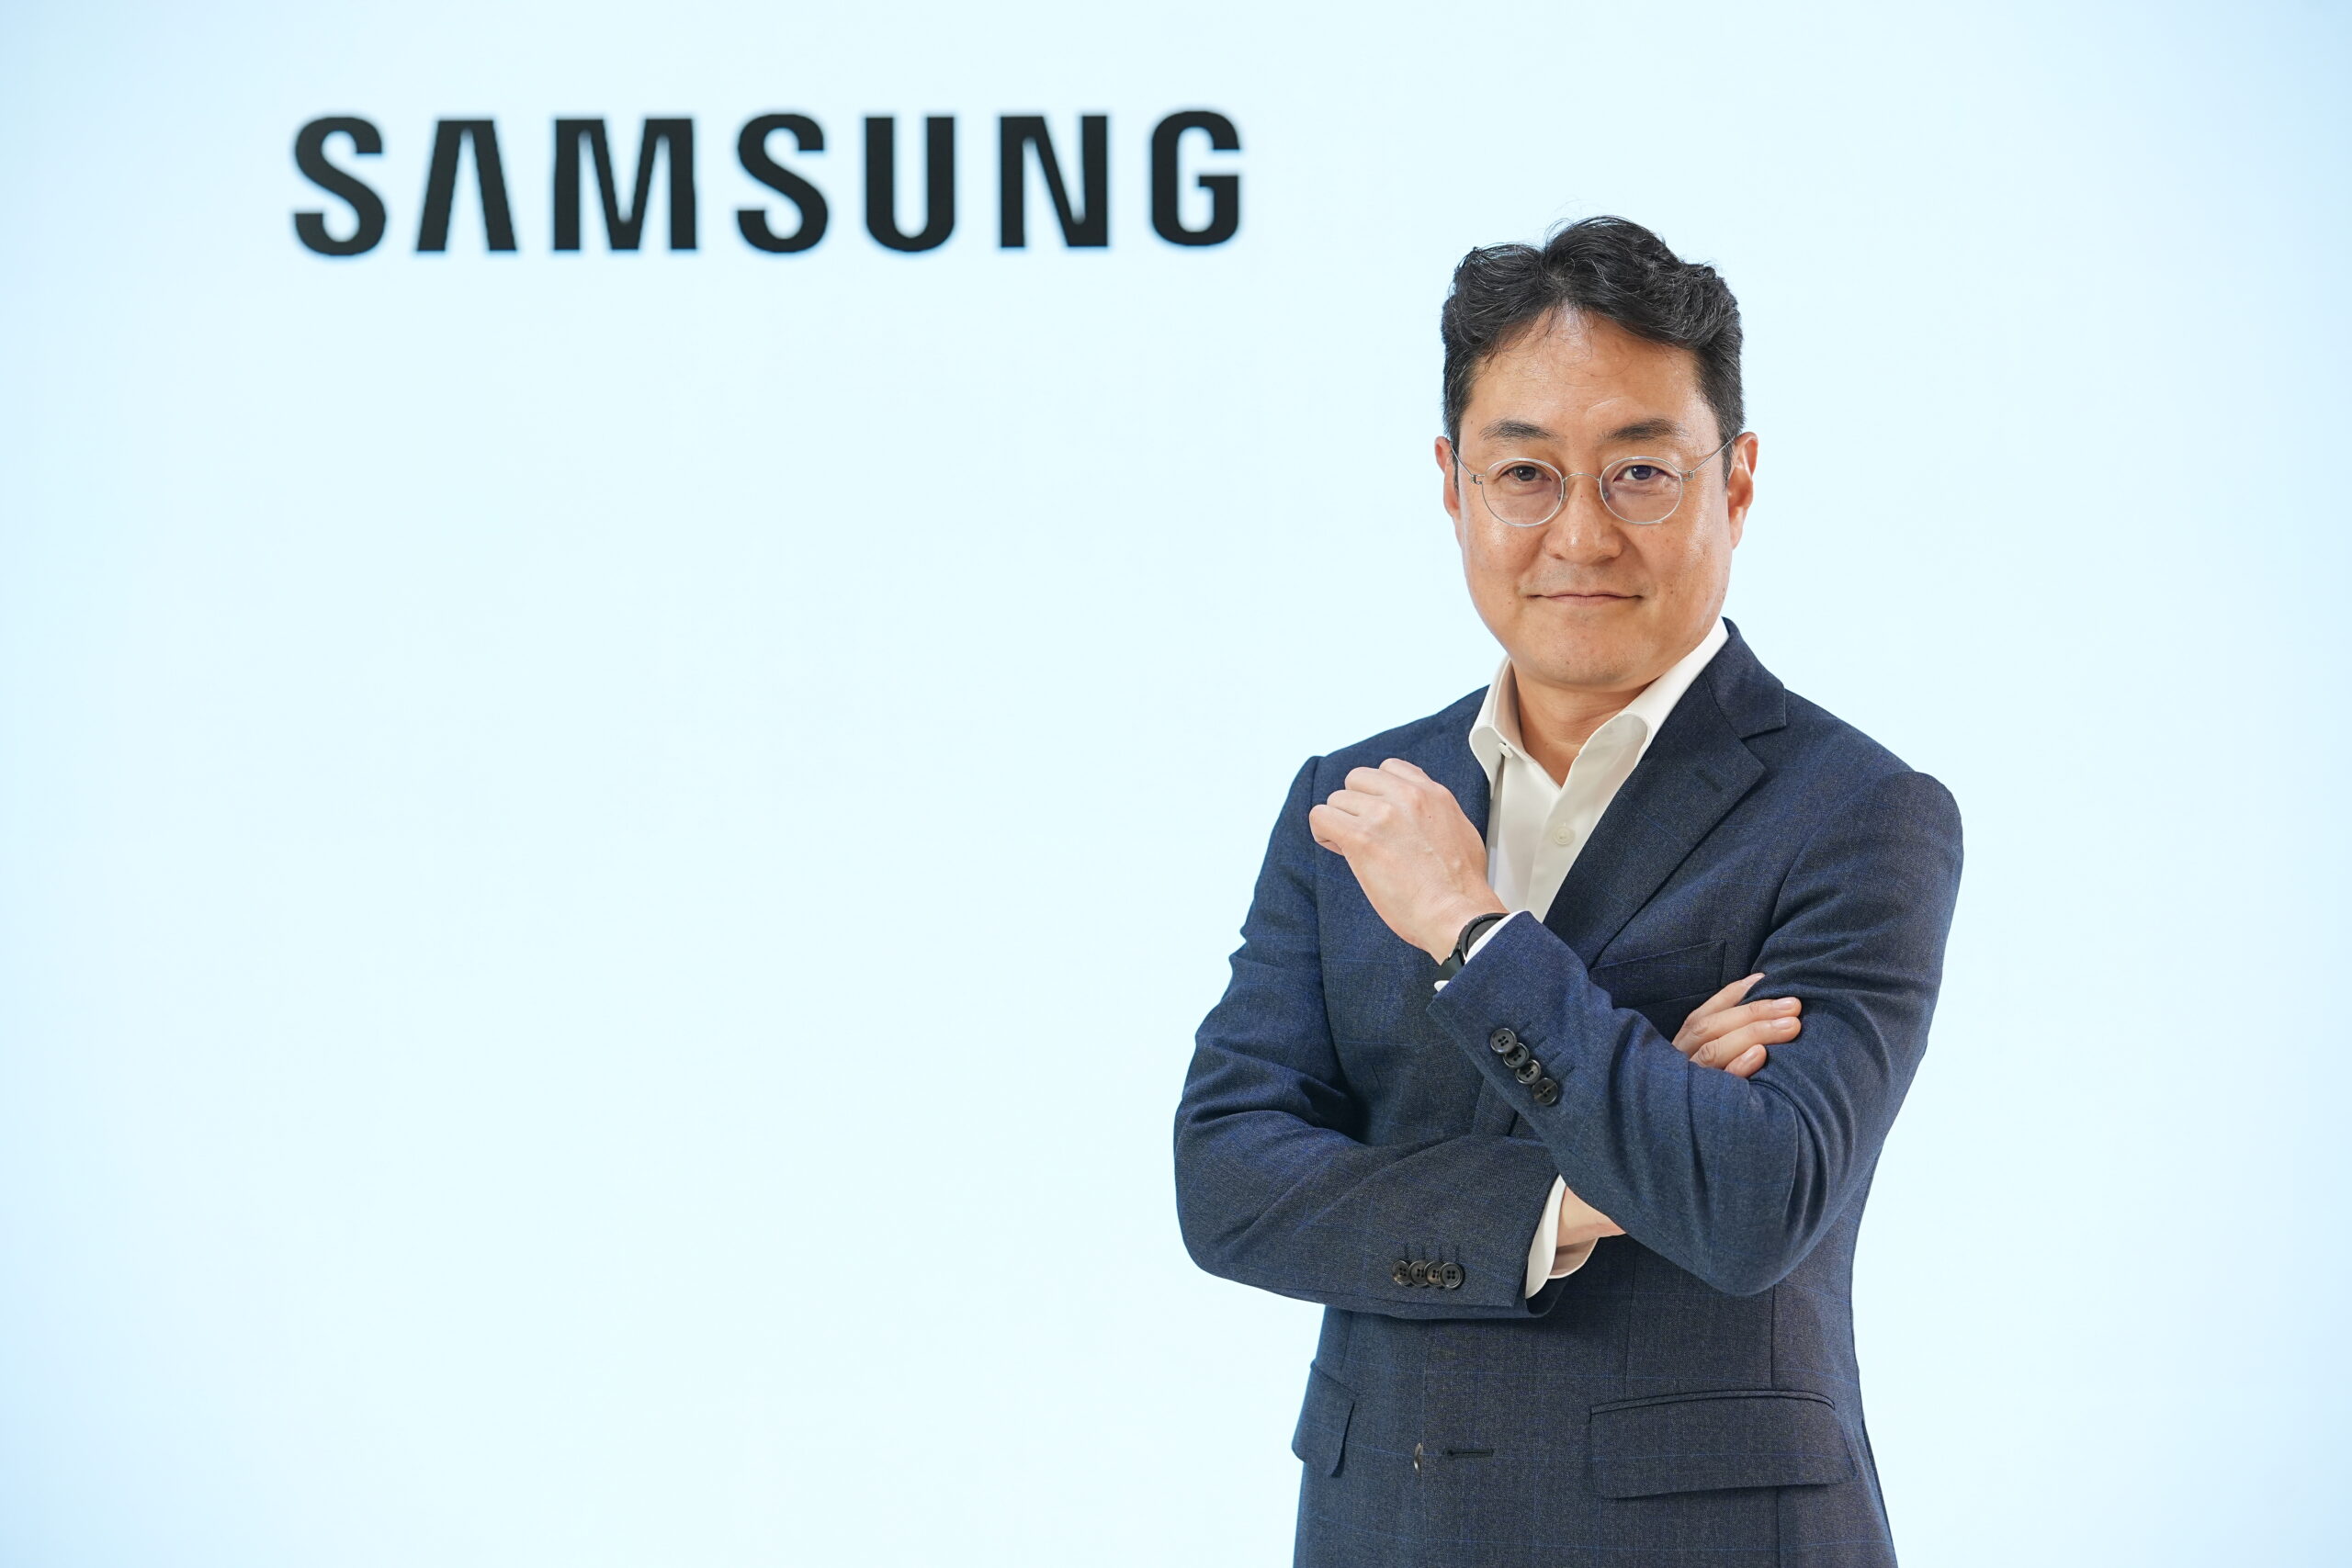 เซยุน คิม ประธานธุรกิจเครื่องใช้ไฟฟ้า บริษัท ไทยซัมซุง อิเลคโทรนิคส์ จำกัด scaled | Samsung‬ | ซัมซุงแต่งตั้ง เซยุน คิม เป็นประธานบริษัทนำทัพ ไทยซัมซุง อิเลคโทรนิคส์ คนใหม่